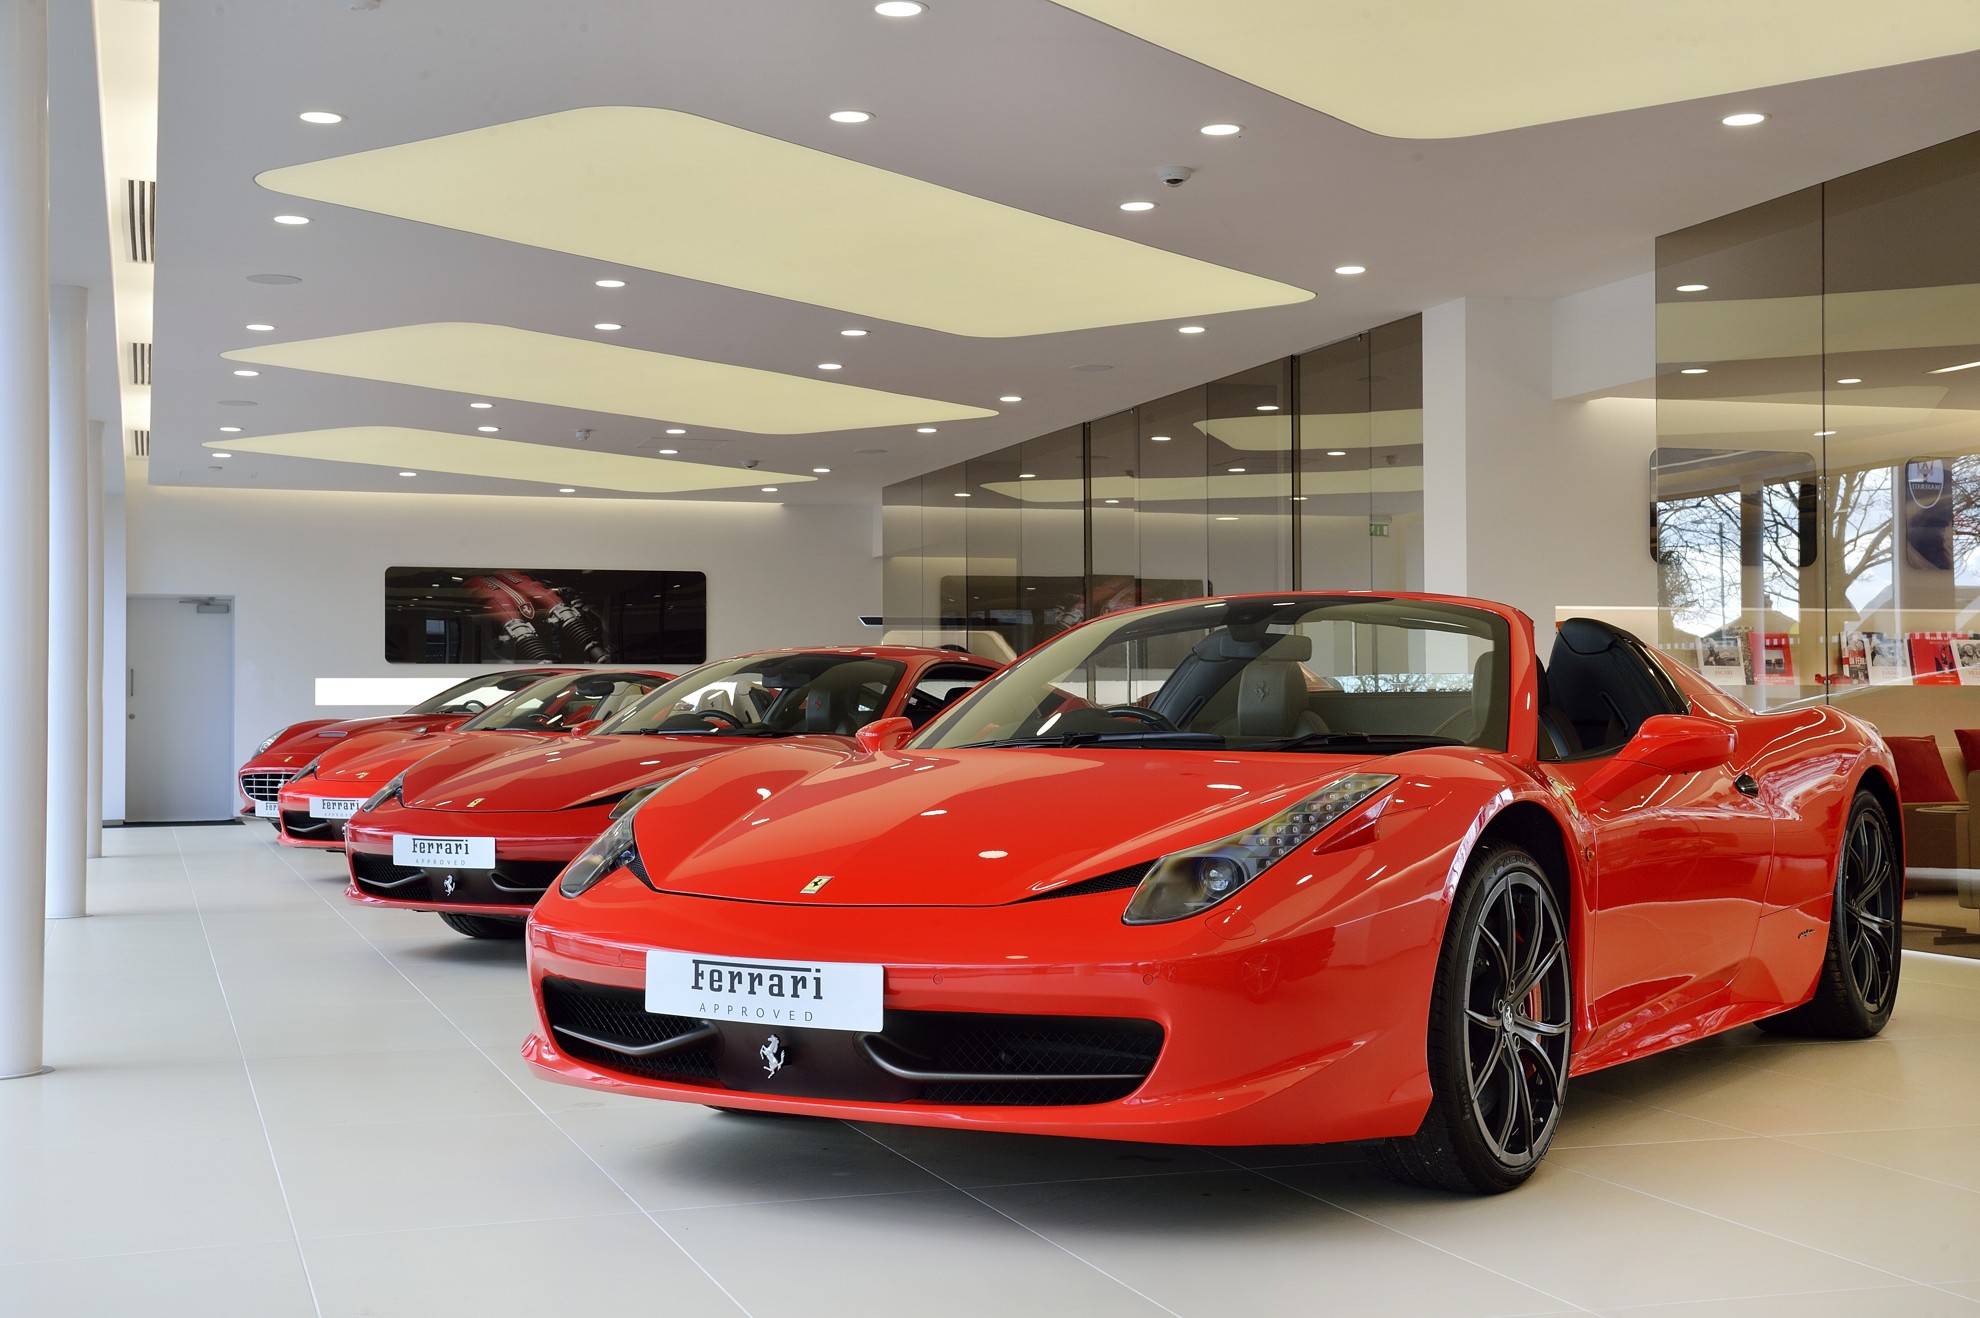 New Ferrari Showroom in Lancaster